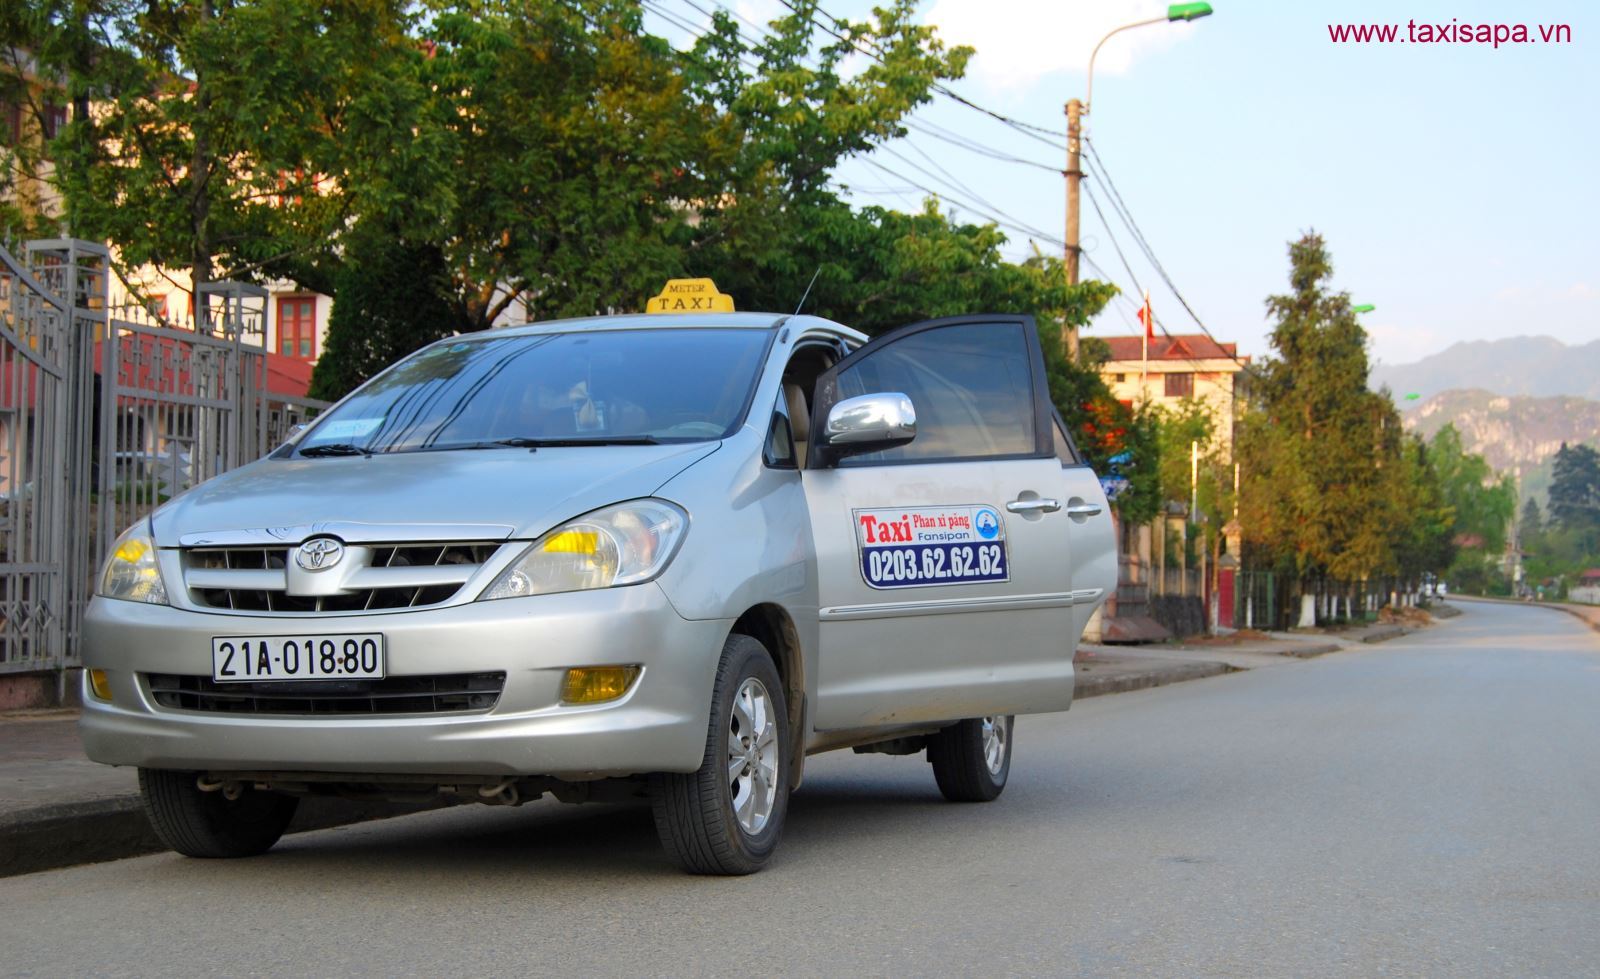 Top 13 Hãng taxi Sapa – Lào Cai uy tín giá rẻ đưa đón bến xe tốt nhất 